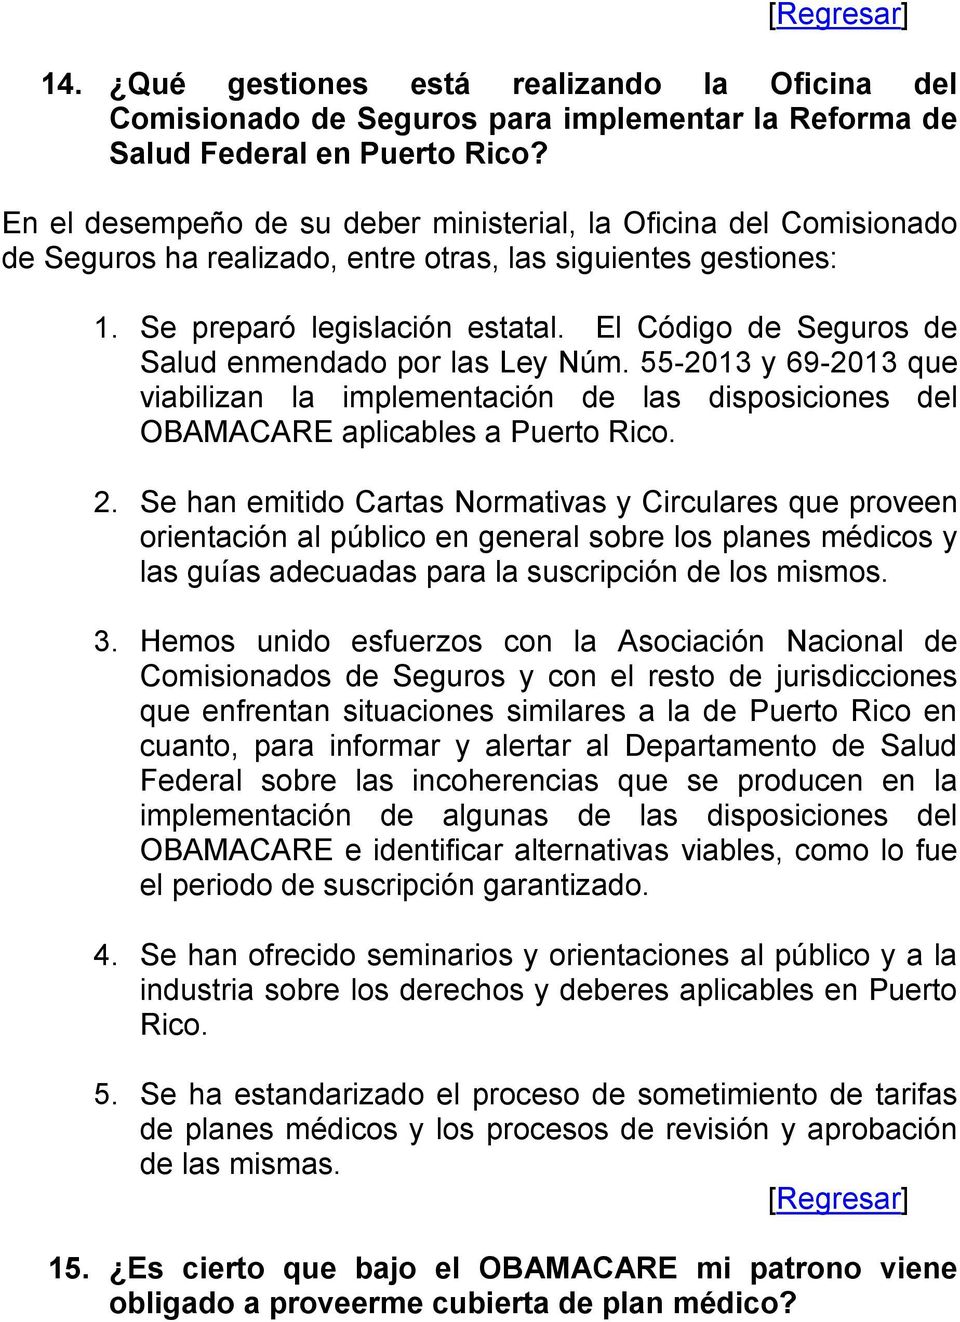 El Código de Seguros de Salud enmendado por las Ley Núm. 55-2013 y 69-2013 que viabilizan la implementación de las disposiciones del OBAMACARE aplicables a Puerto Rico. 2.